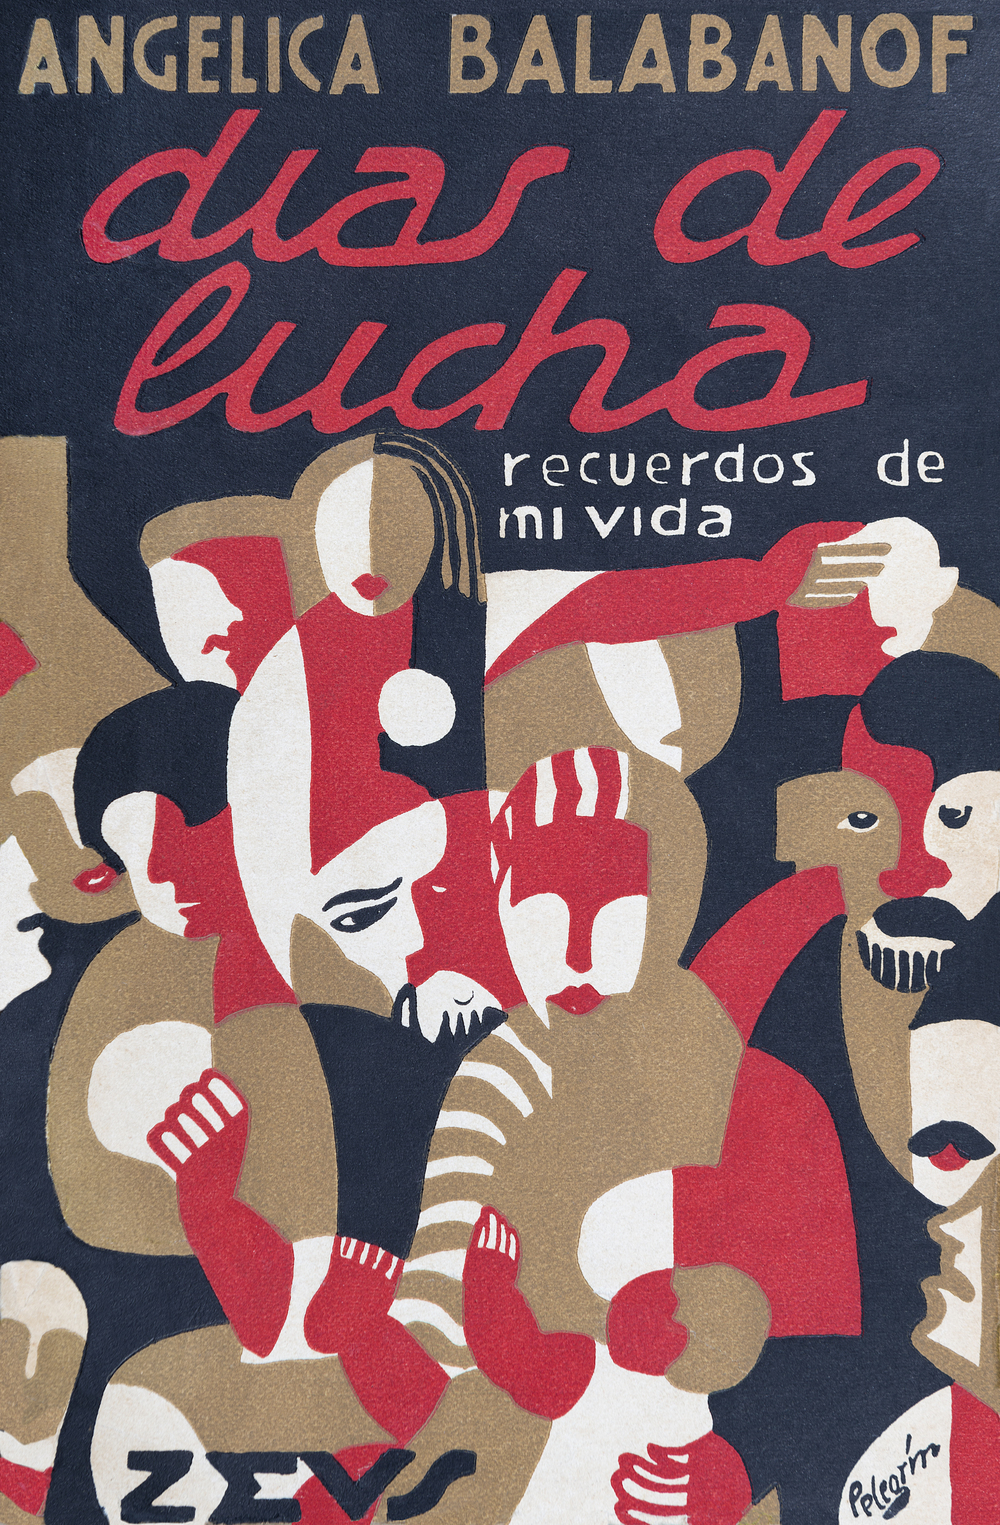 Ceden a la Junta 500 libros ilustrados de vanguardia española